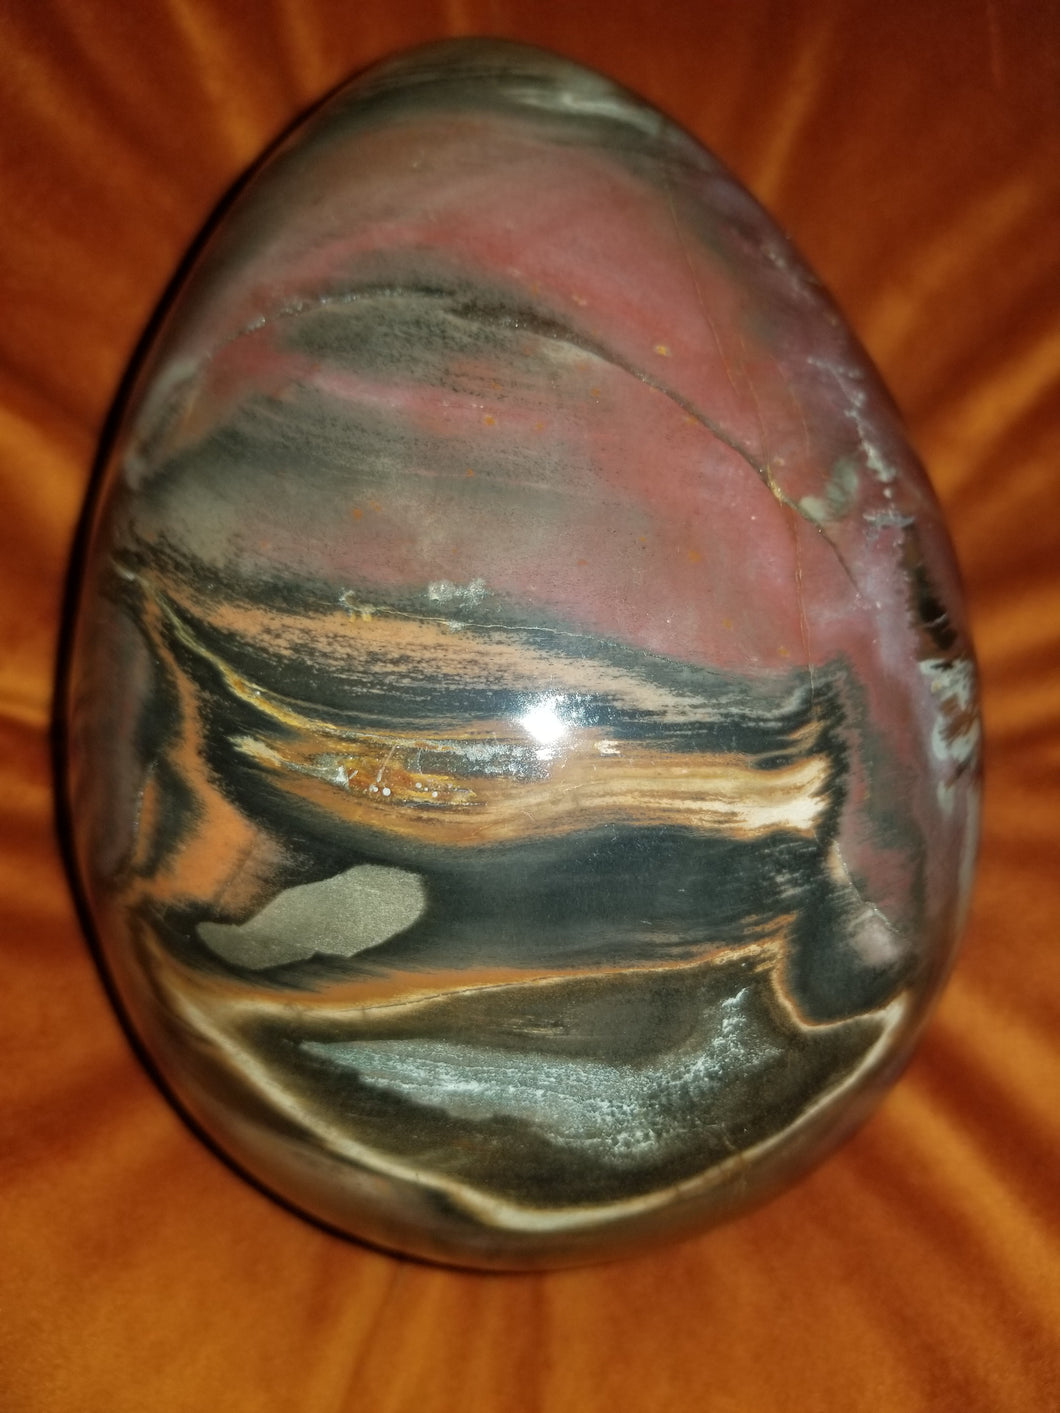 Petrified Wood Egg (Extra Large Stone)